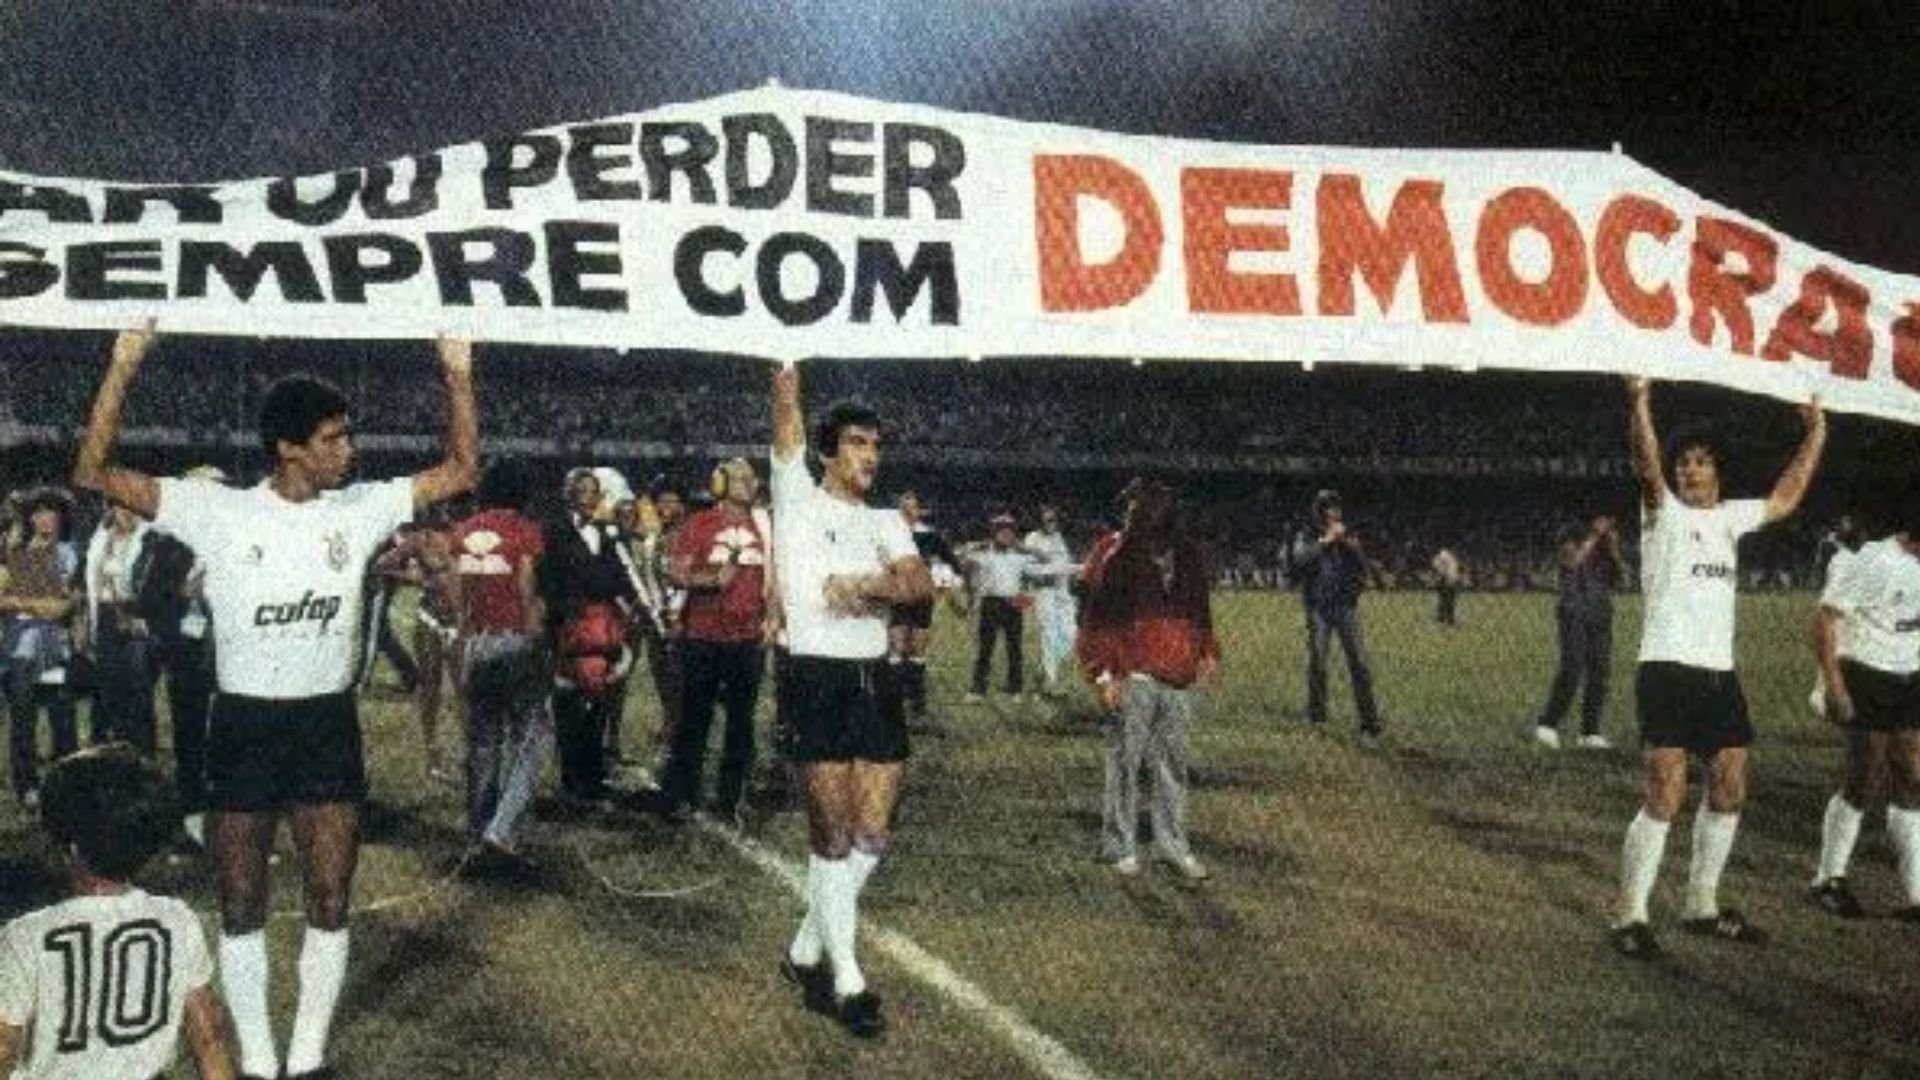 A Democracia Corinthiana foi um movimento ocorrido no futebol brasileiro, especificamente no time paulistano Corinthians, na década de 1980 | Foto: Reprodução/Facebook